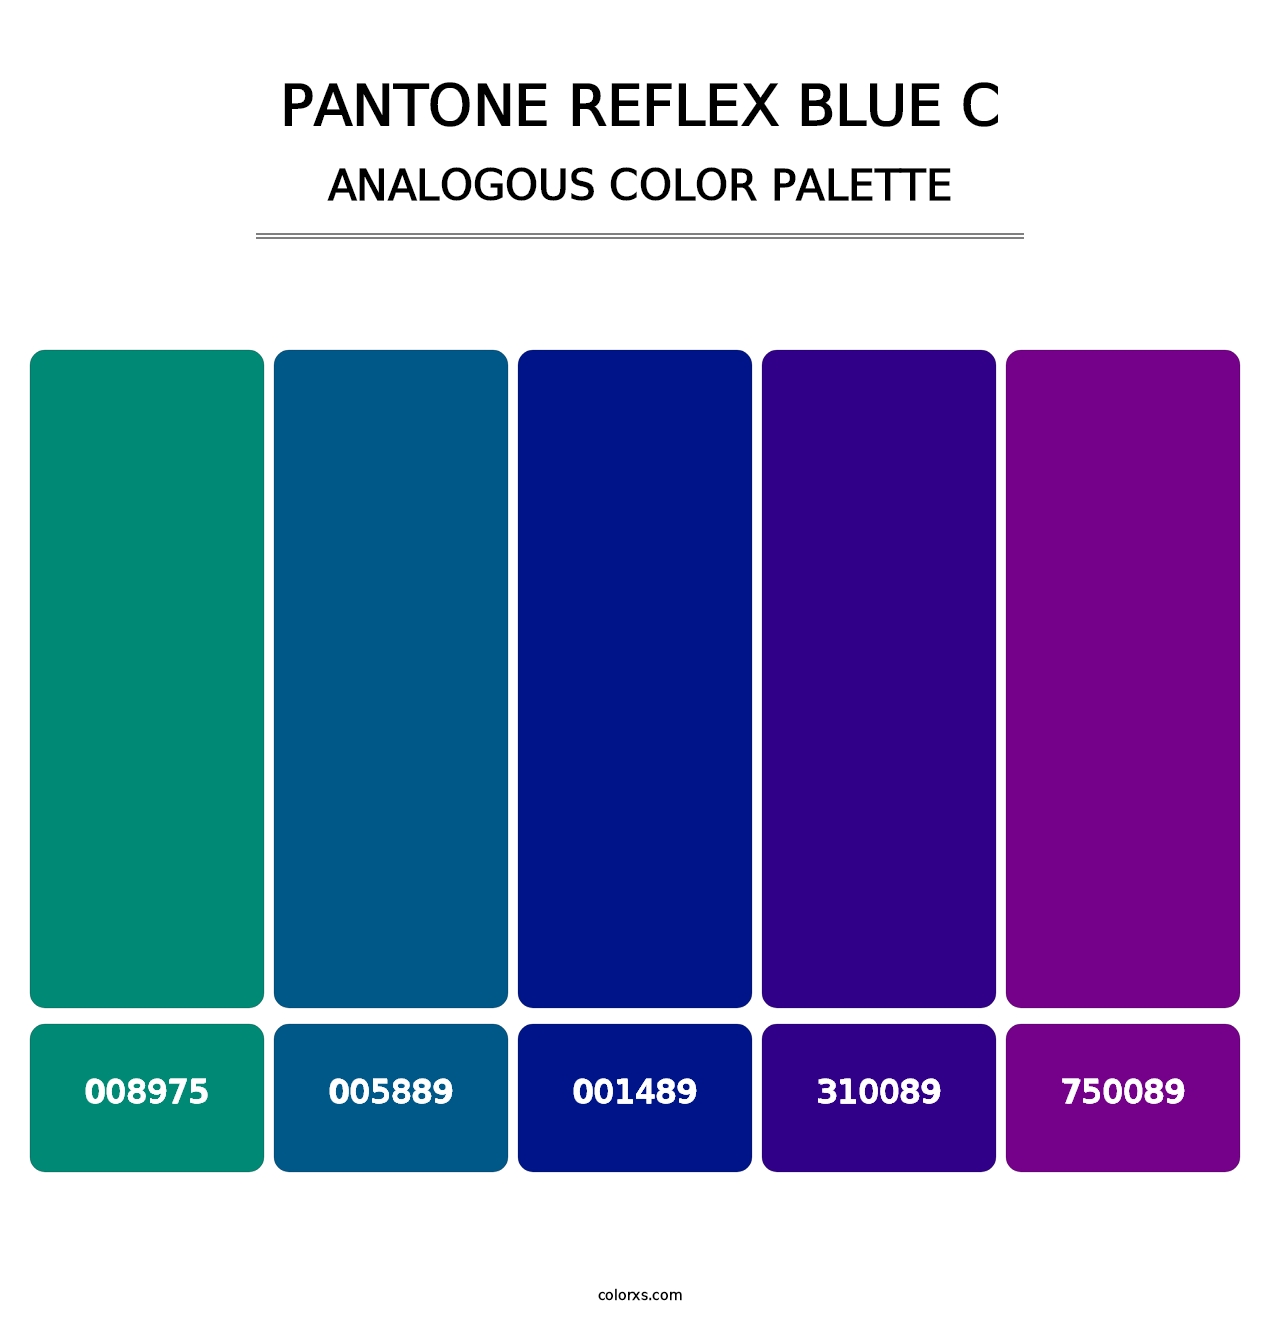 PANTONE Reflex Blue C - Analogous Color Palette